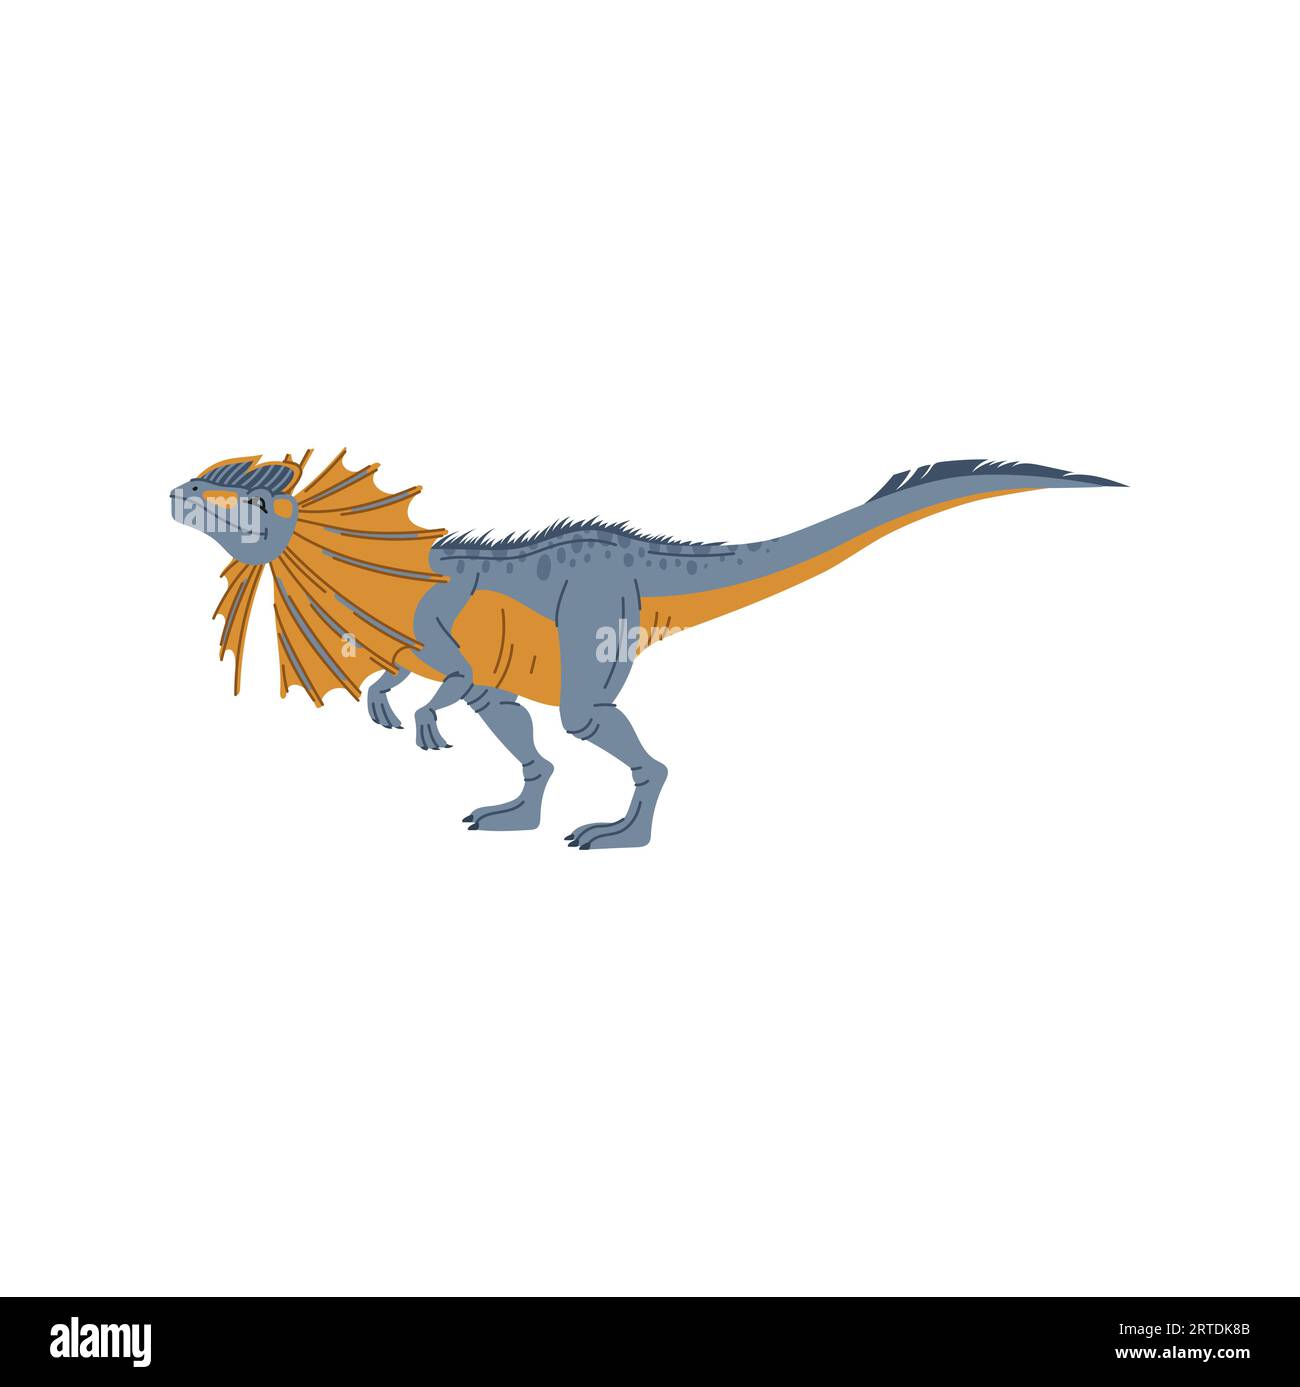 Dilophosaurus théropode dinosaure animal de dessin animé. Animal Dino, personnage bébé dinosaure enfants. Dino avec écusson sur le cou, créature préhistorique éteinte Illustration de Vecteur